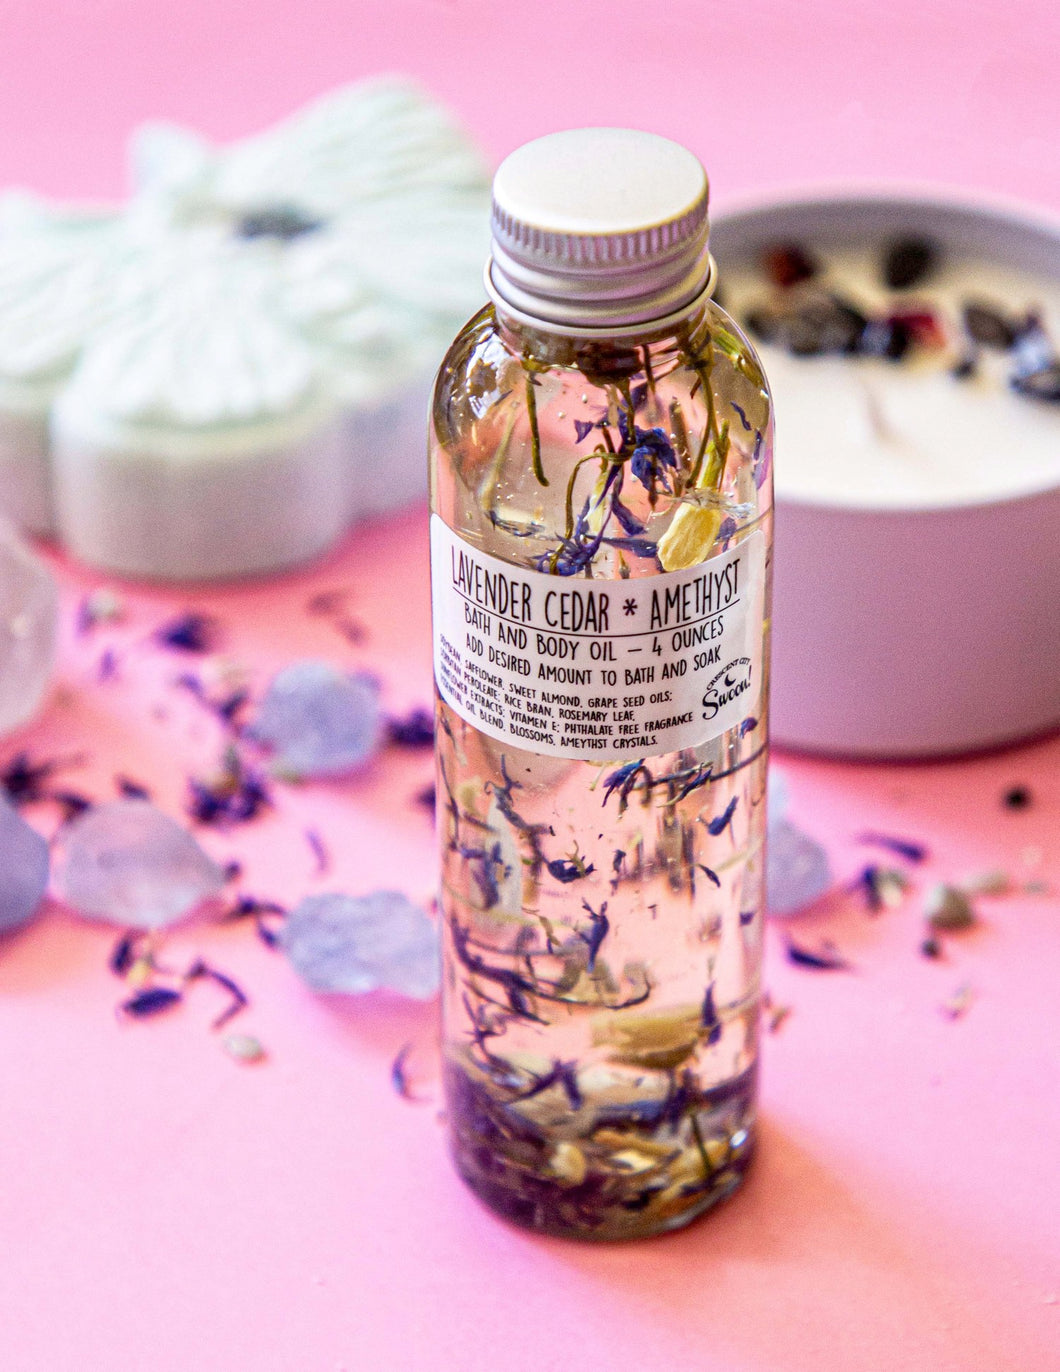 Amethyst Crystal Lavender & Cedar Bath and Body Oil